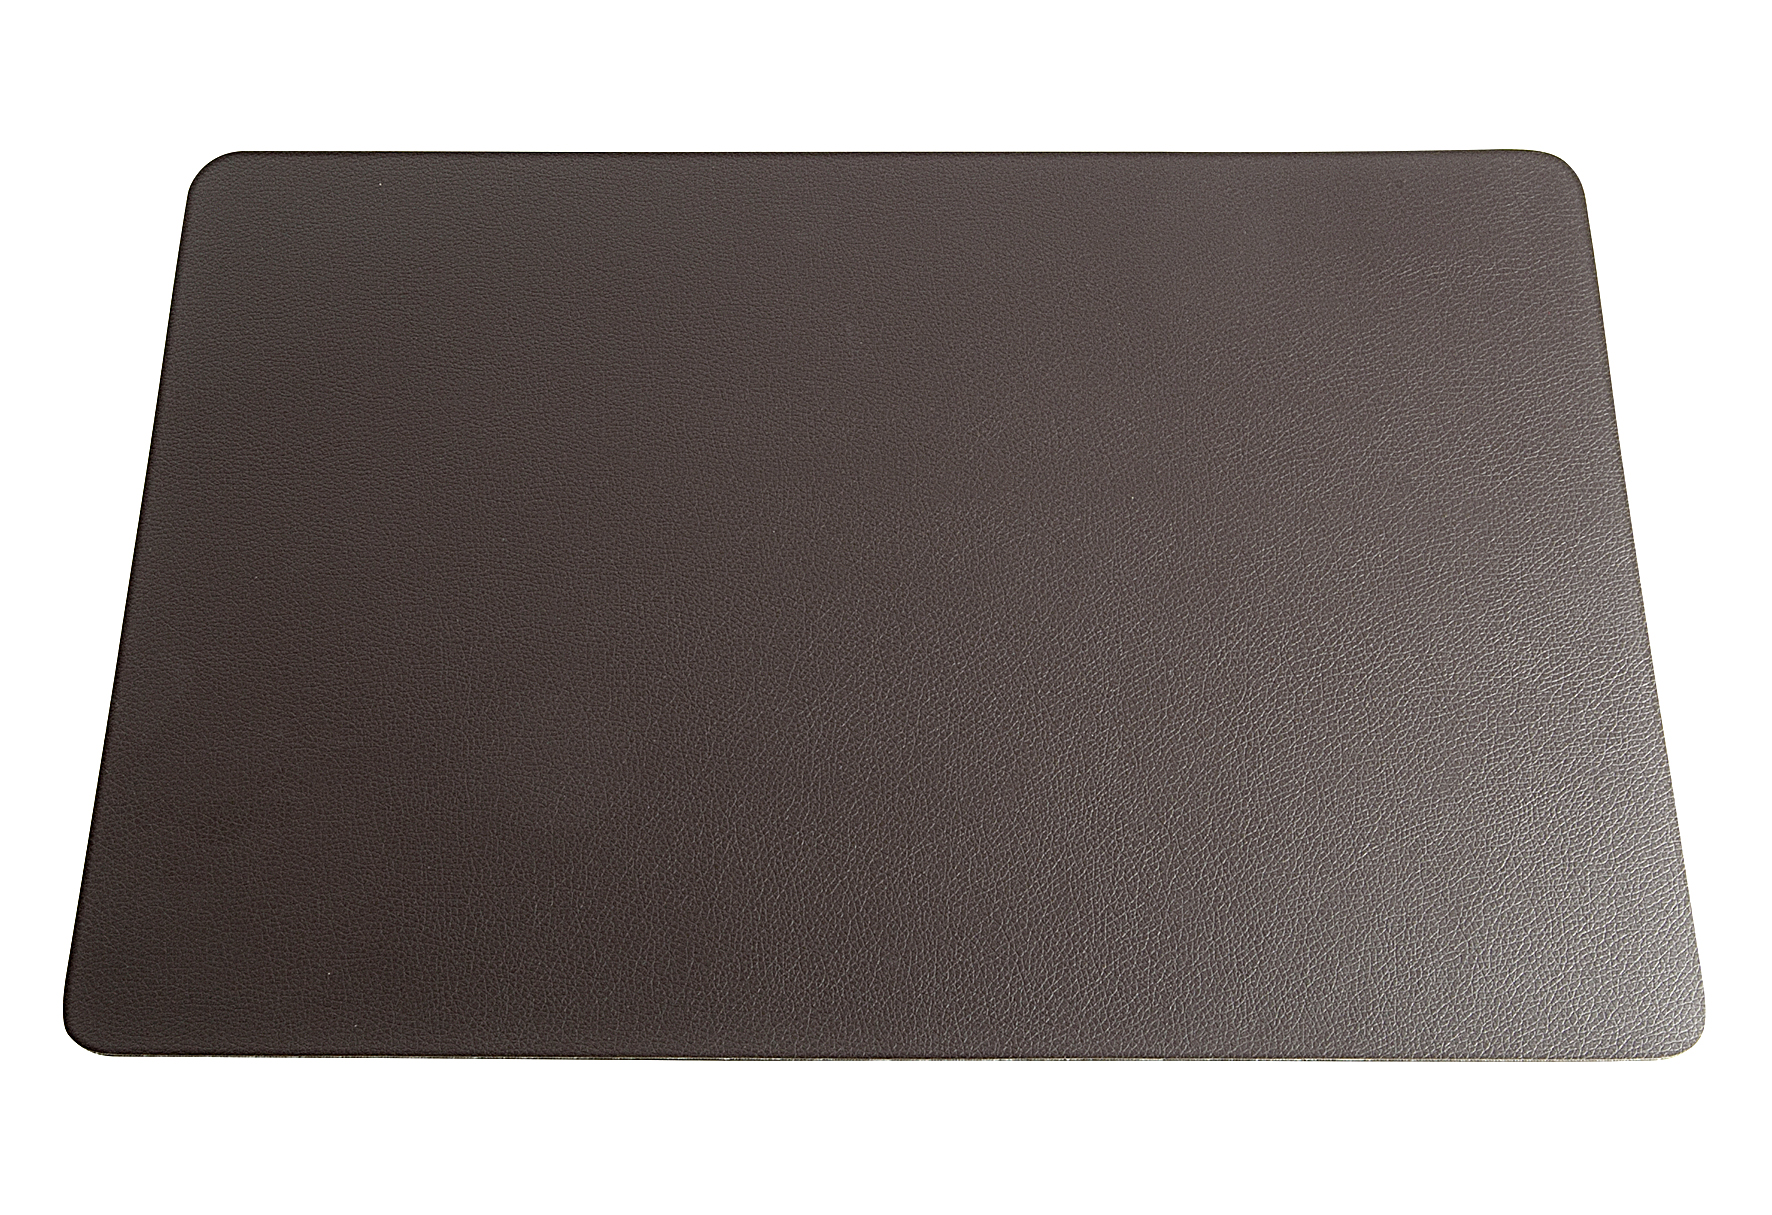  leather optic fine Tischset, braun  Breite: 33cm Länge: 46cm  